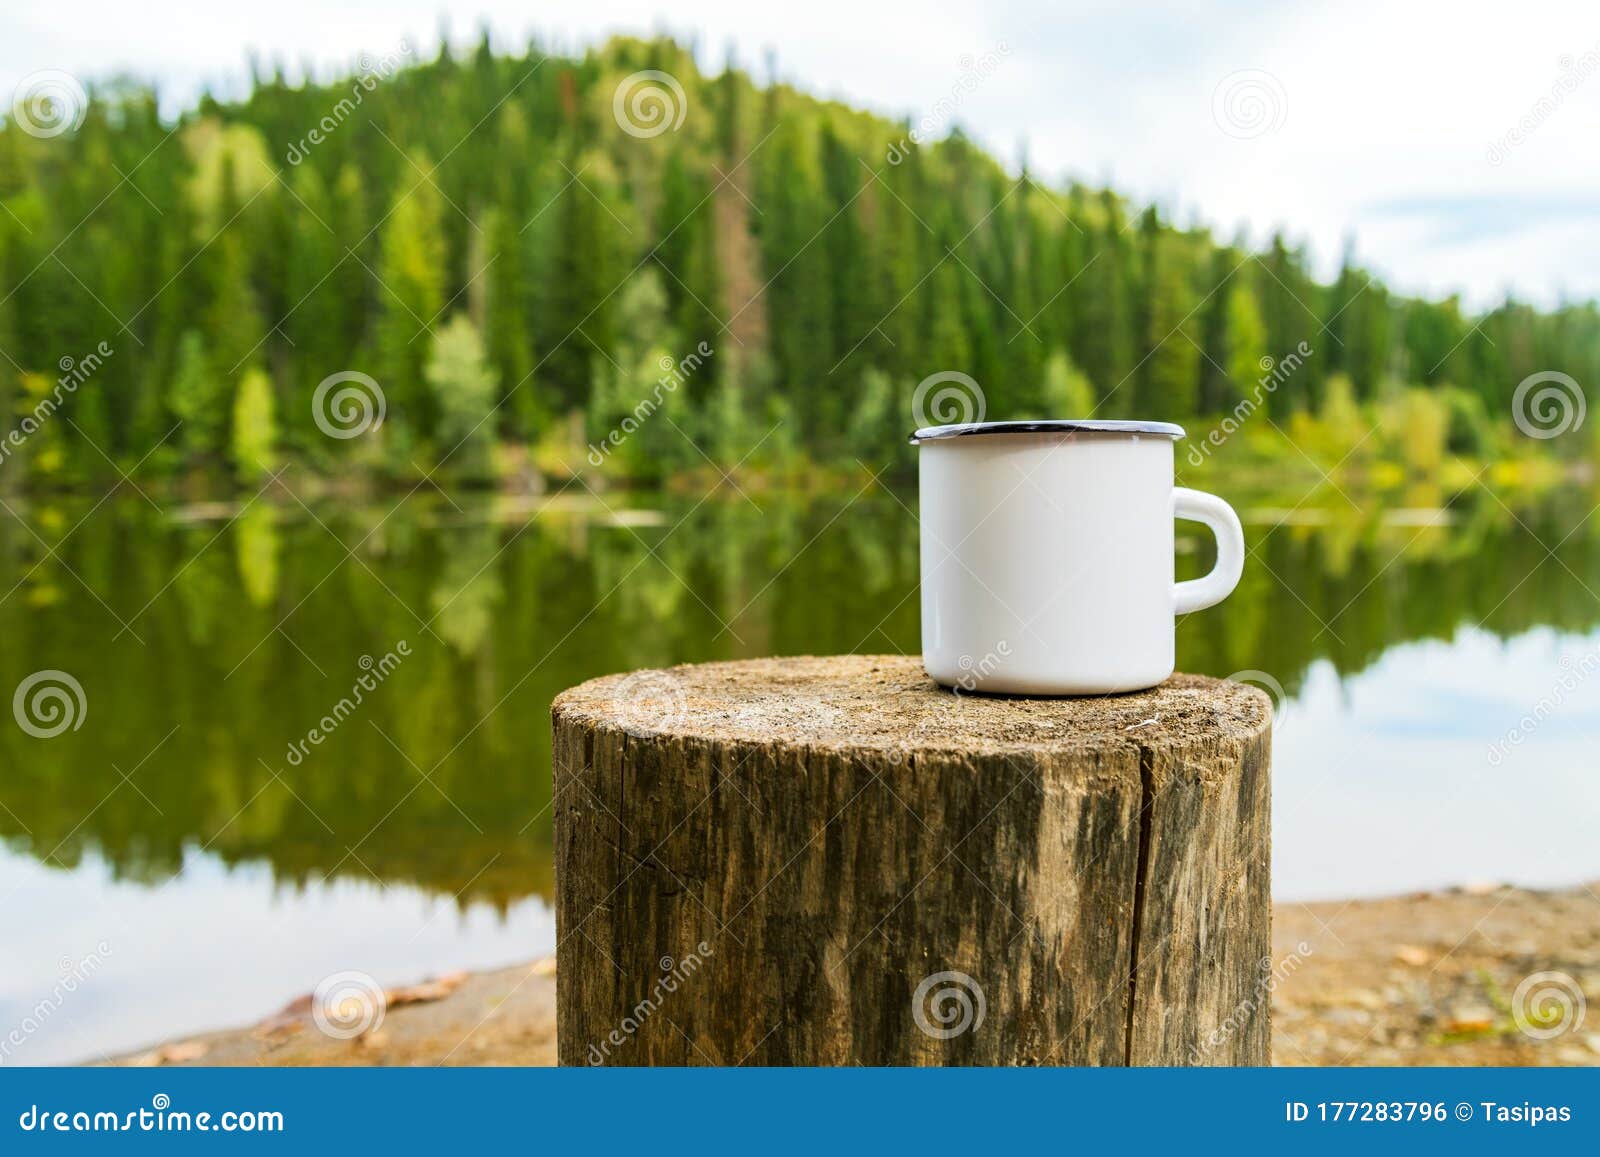 white campfire mug mockup with river bank view